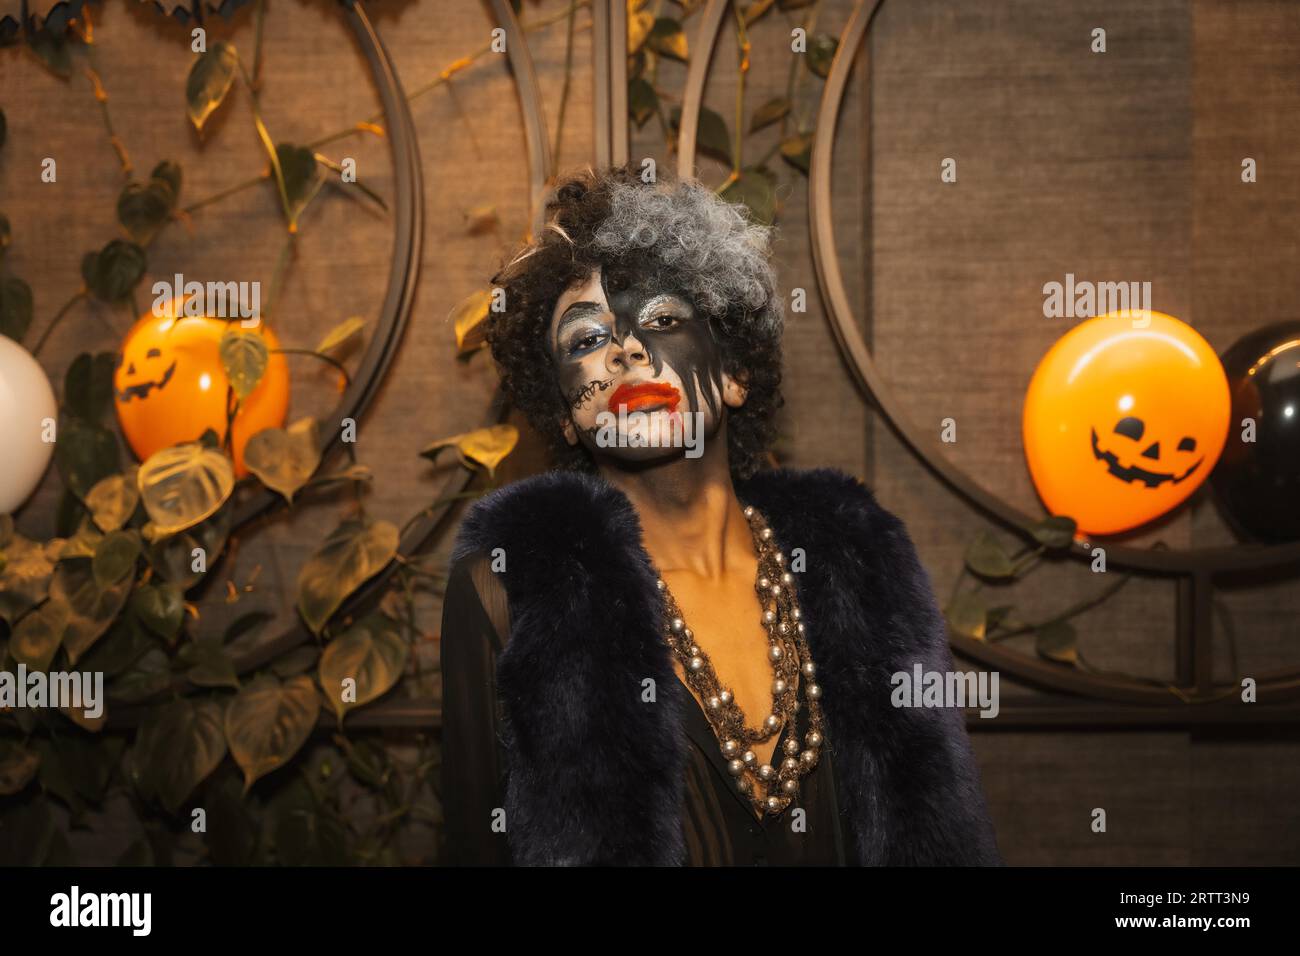 Fête d'Halloween avec des amis dans une discothèque, portrait d'un homme en maquillage noir et blanc Banque D'Images